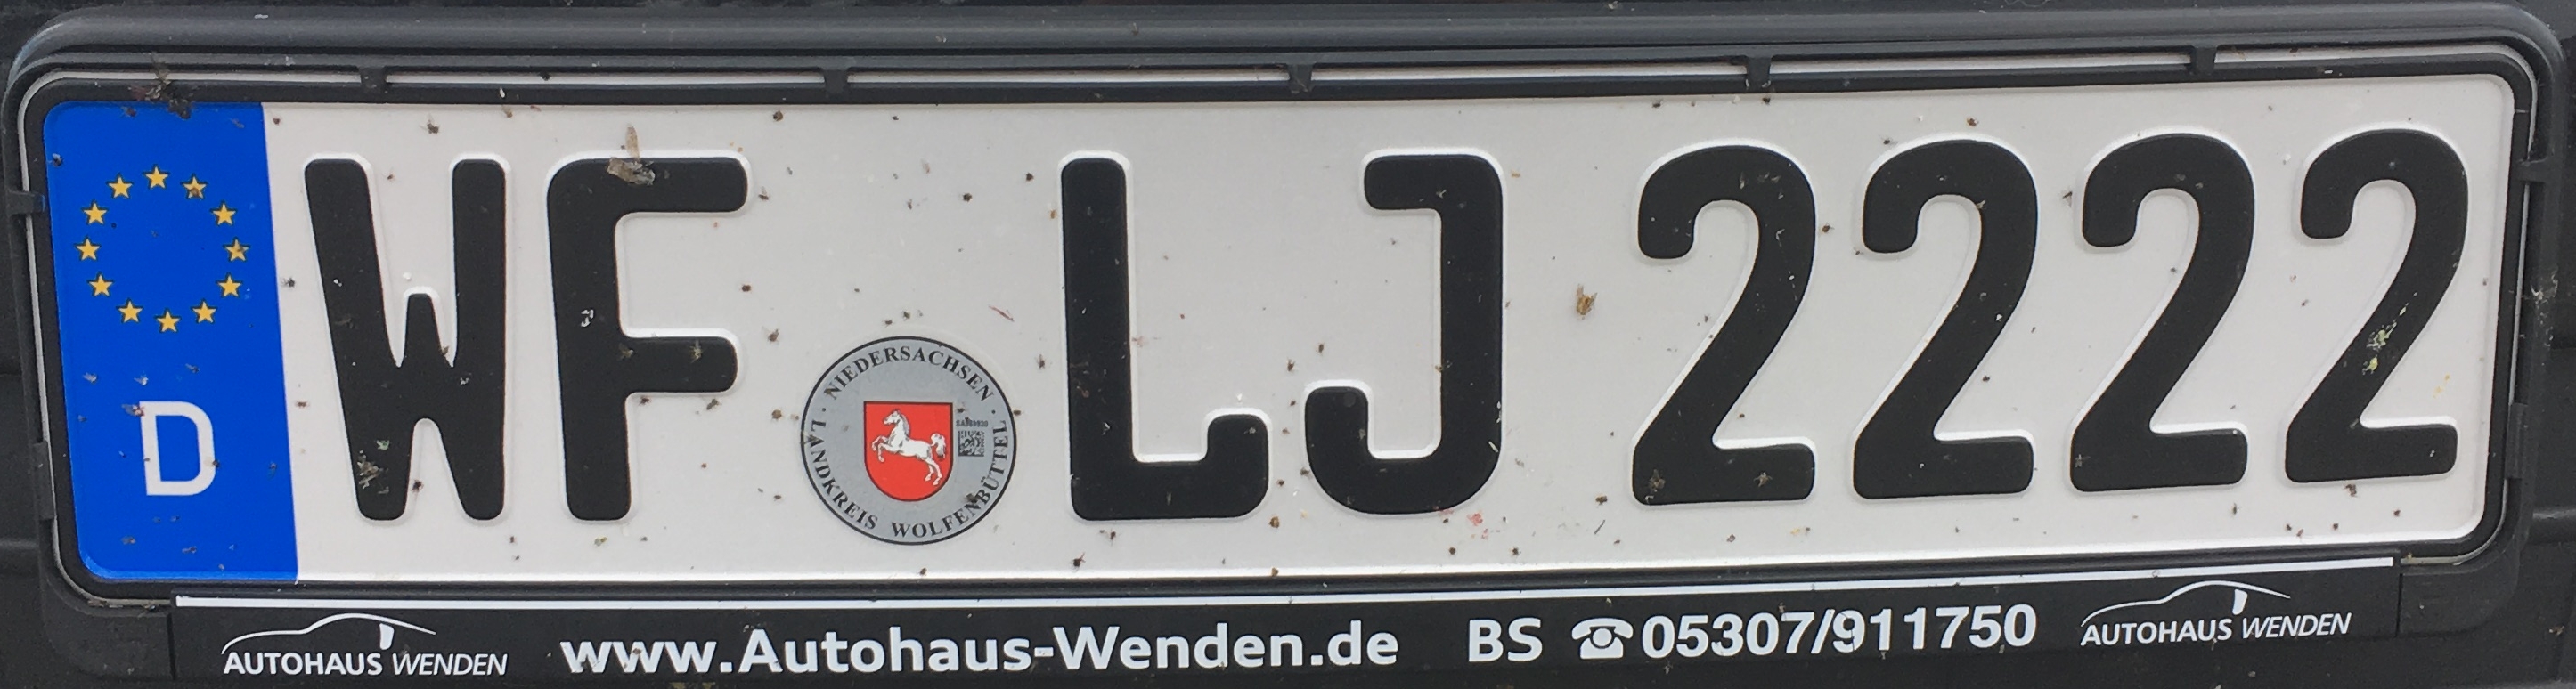 Registrační značka Německo – WF - Wolfenbüttel, foto: www.podalnici.cz